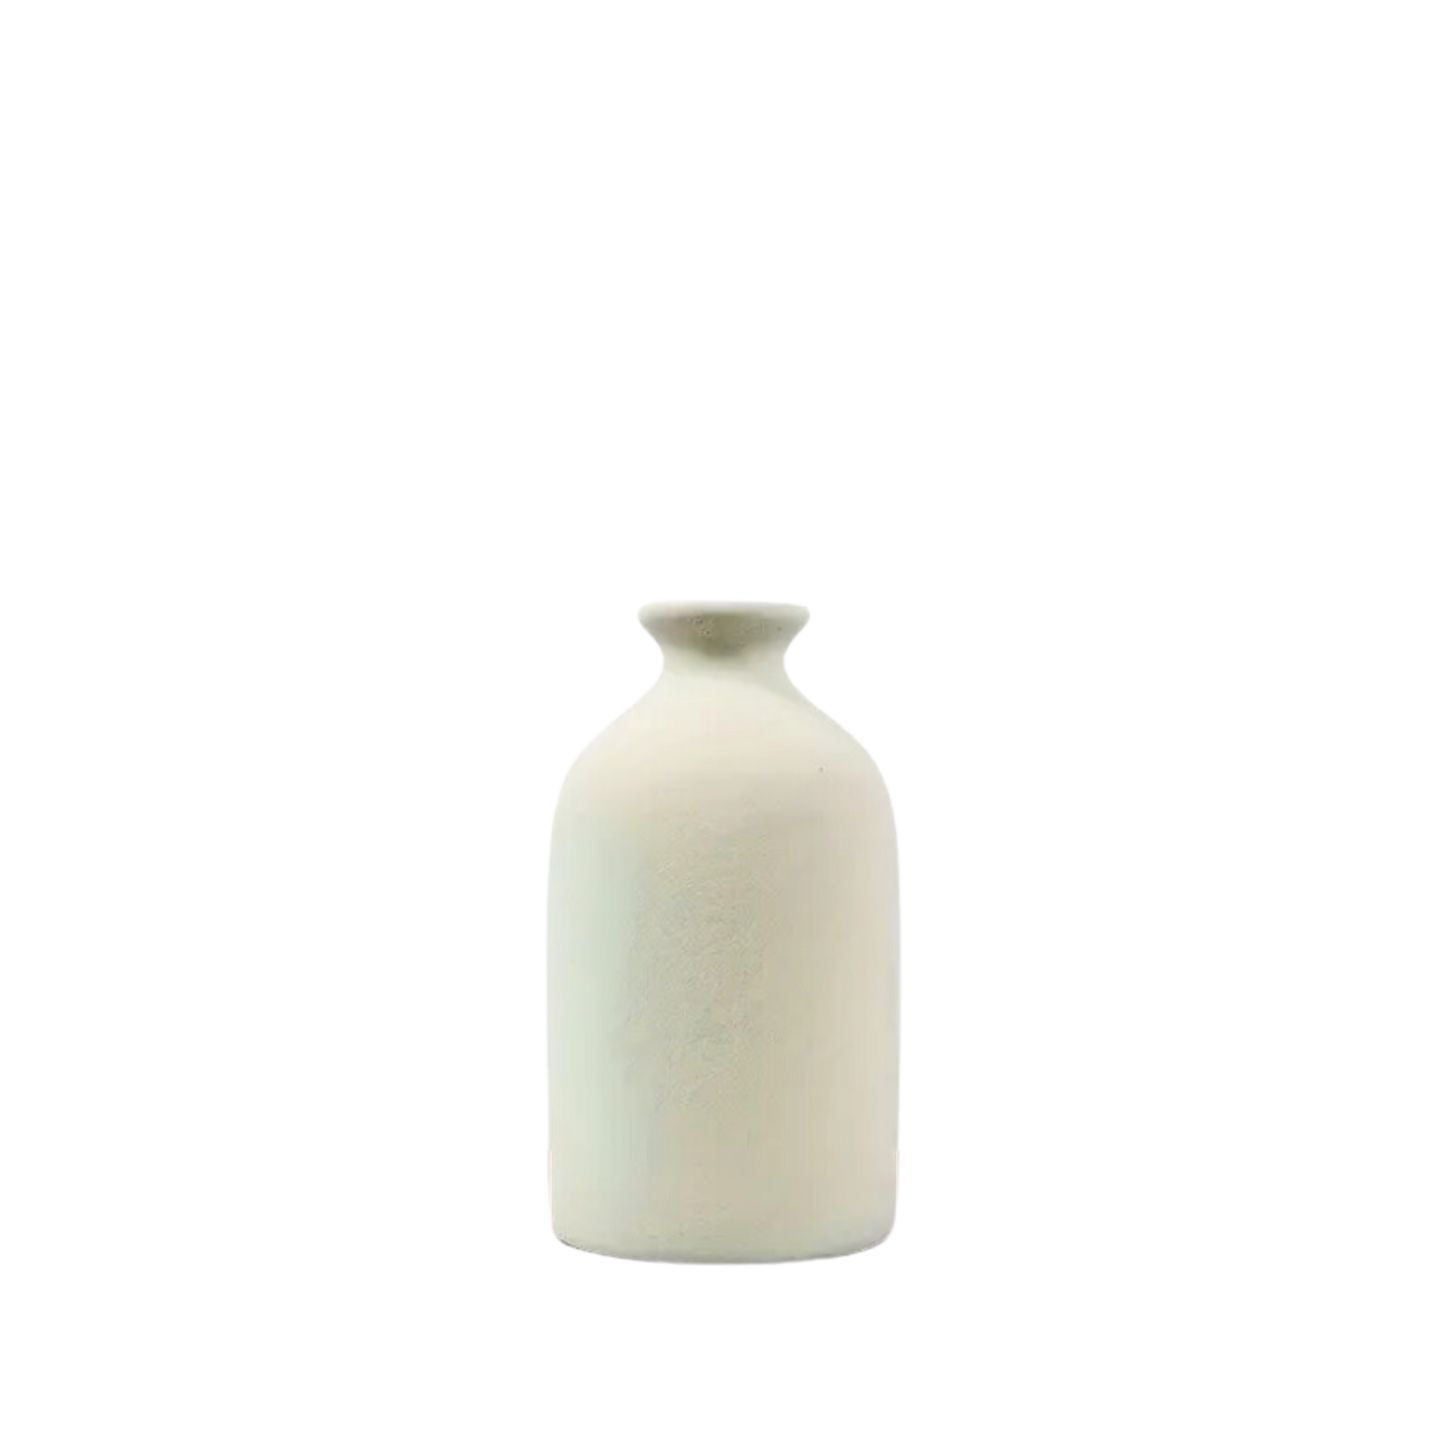 Ceramic Bud Vases